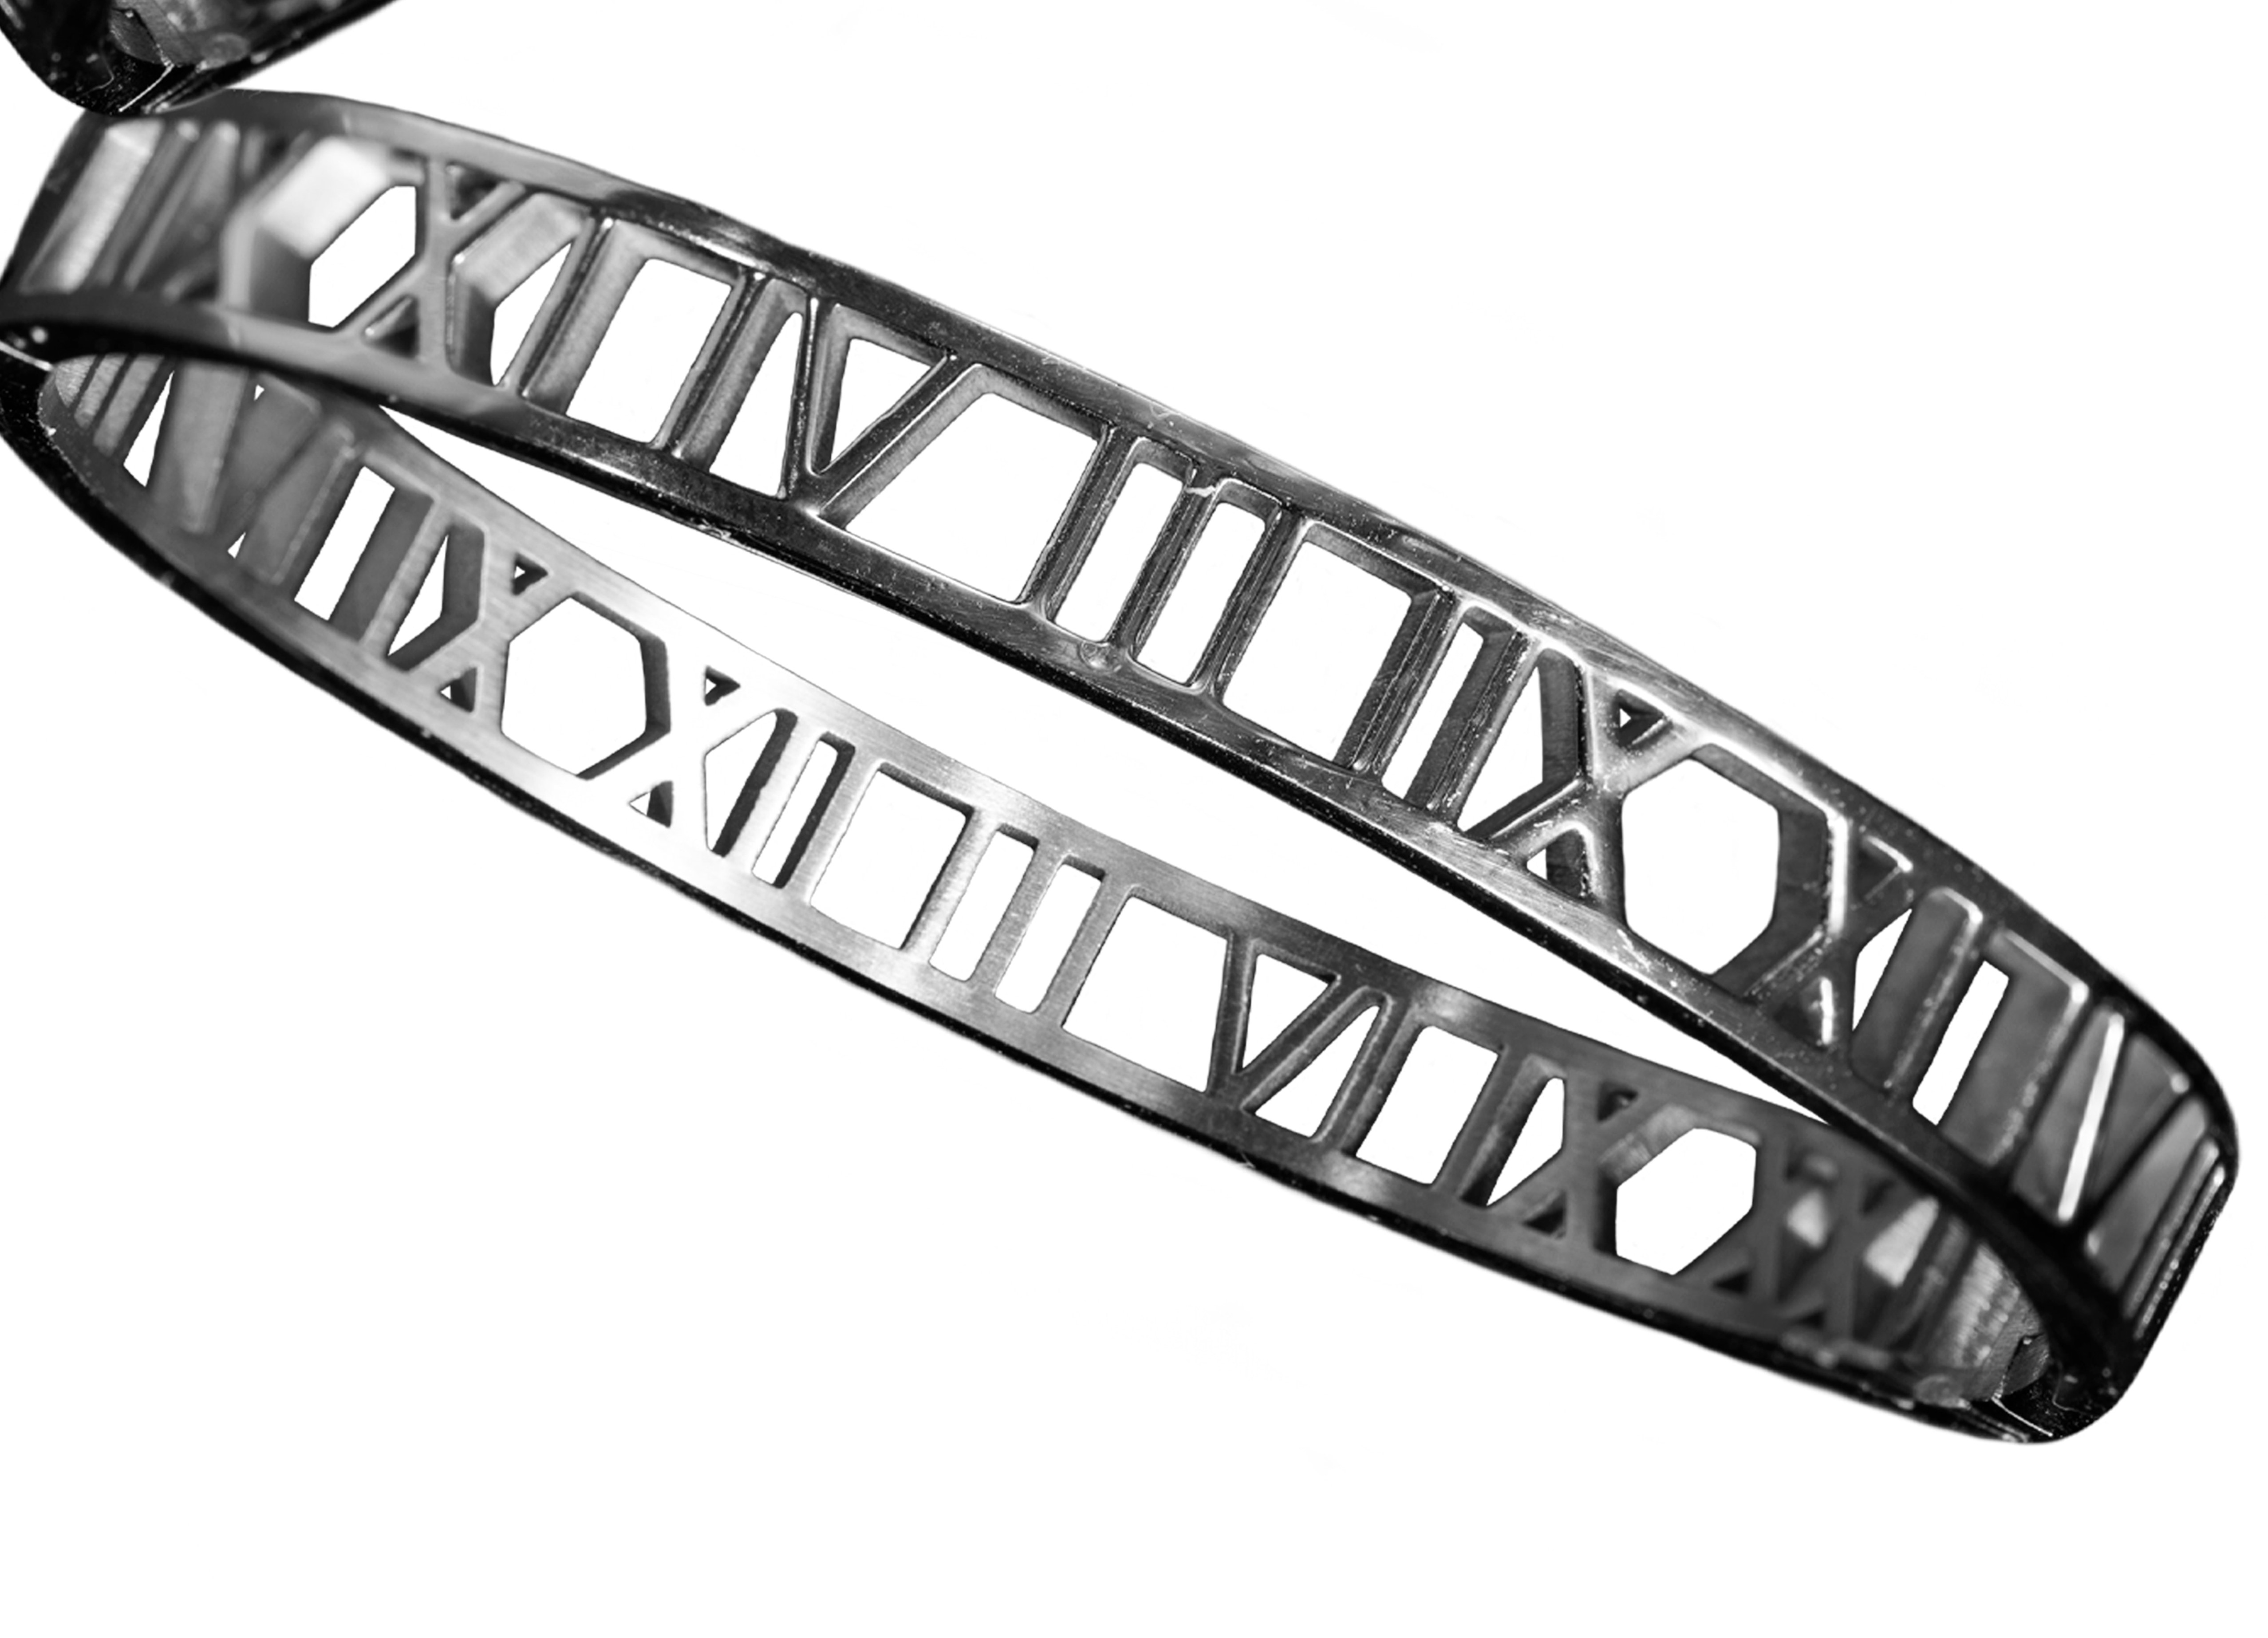 Fotografía de una parte de dos brazaletes de metal plateado con diseño de numeros romanos 